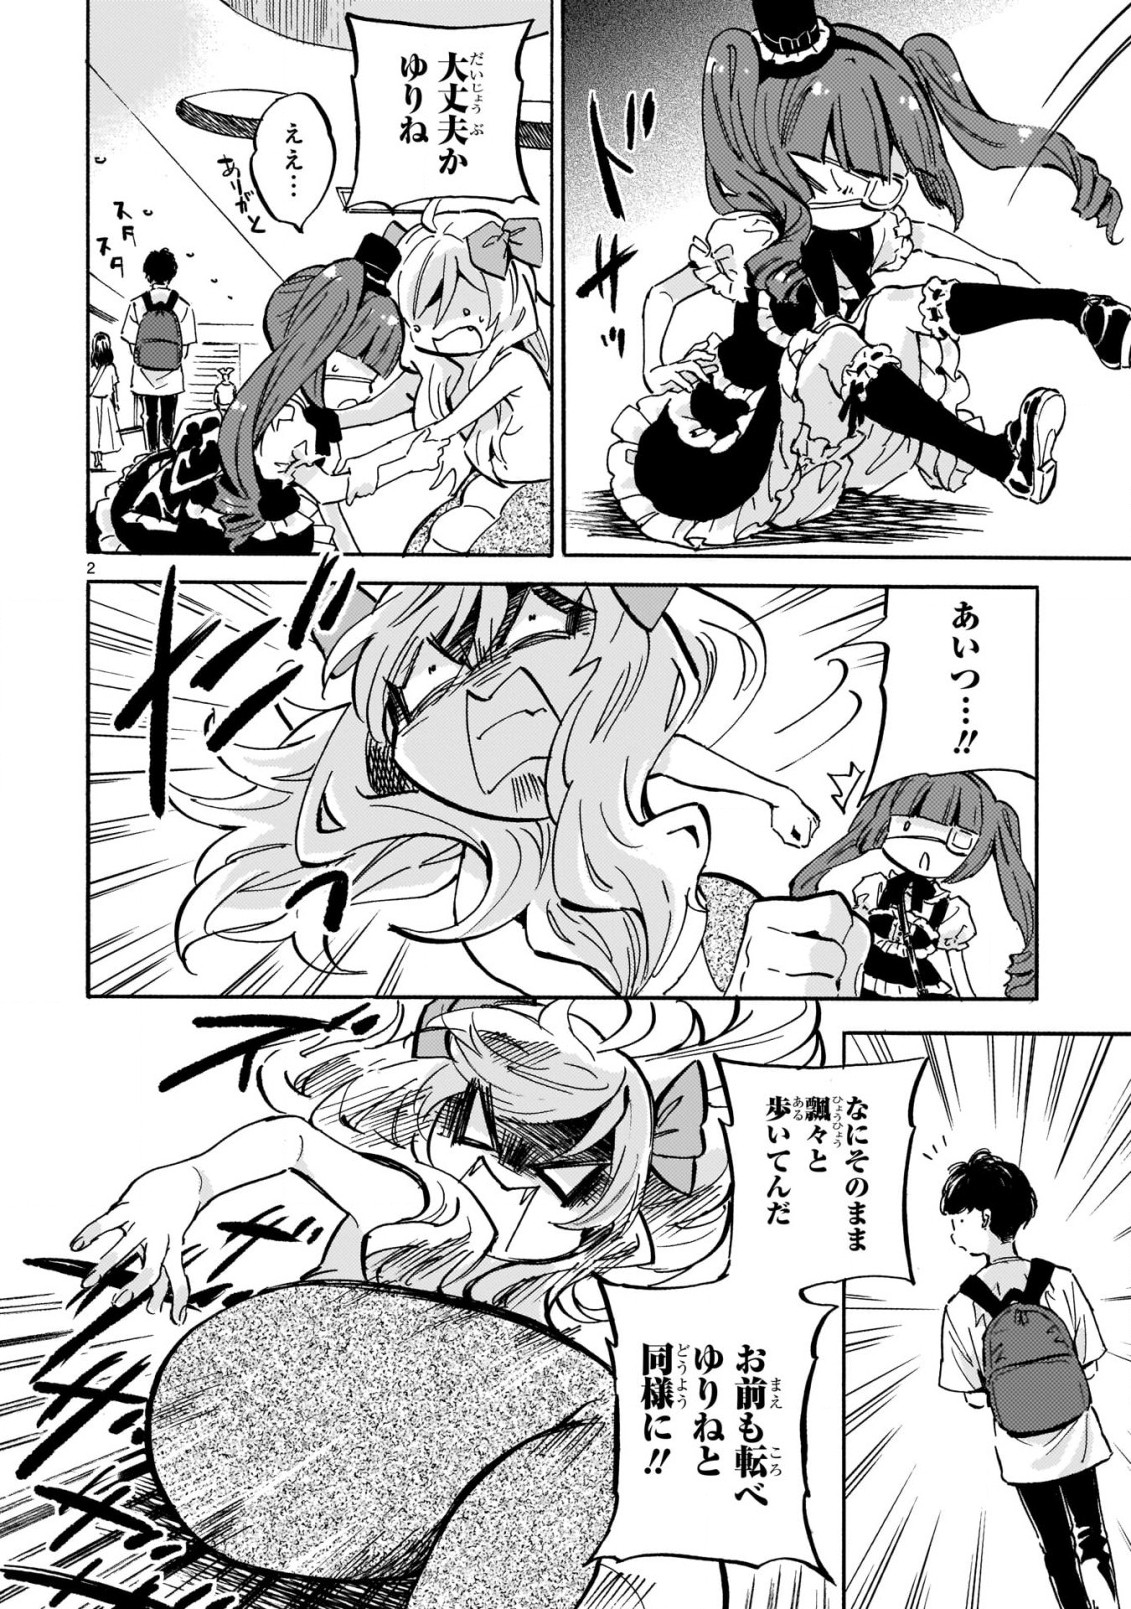 Jashin-chan Dropkick - Chapter 219 - Page 2